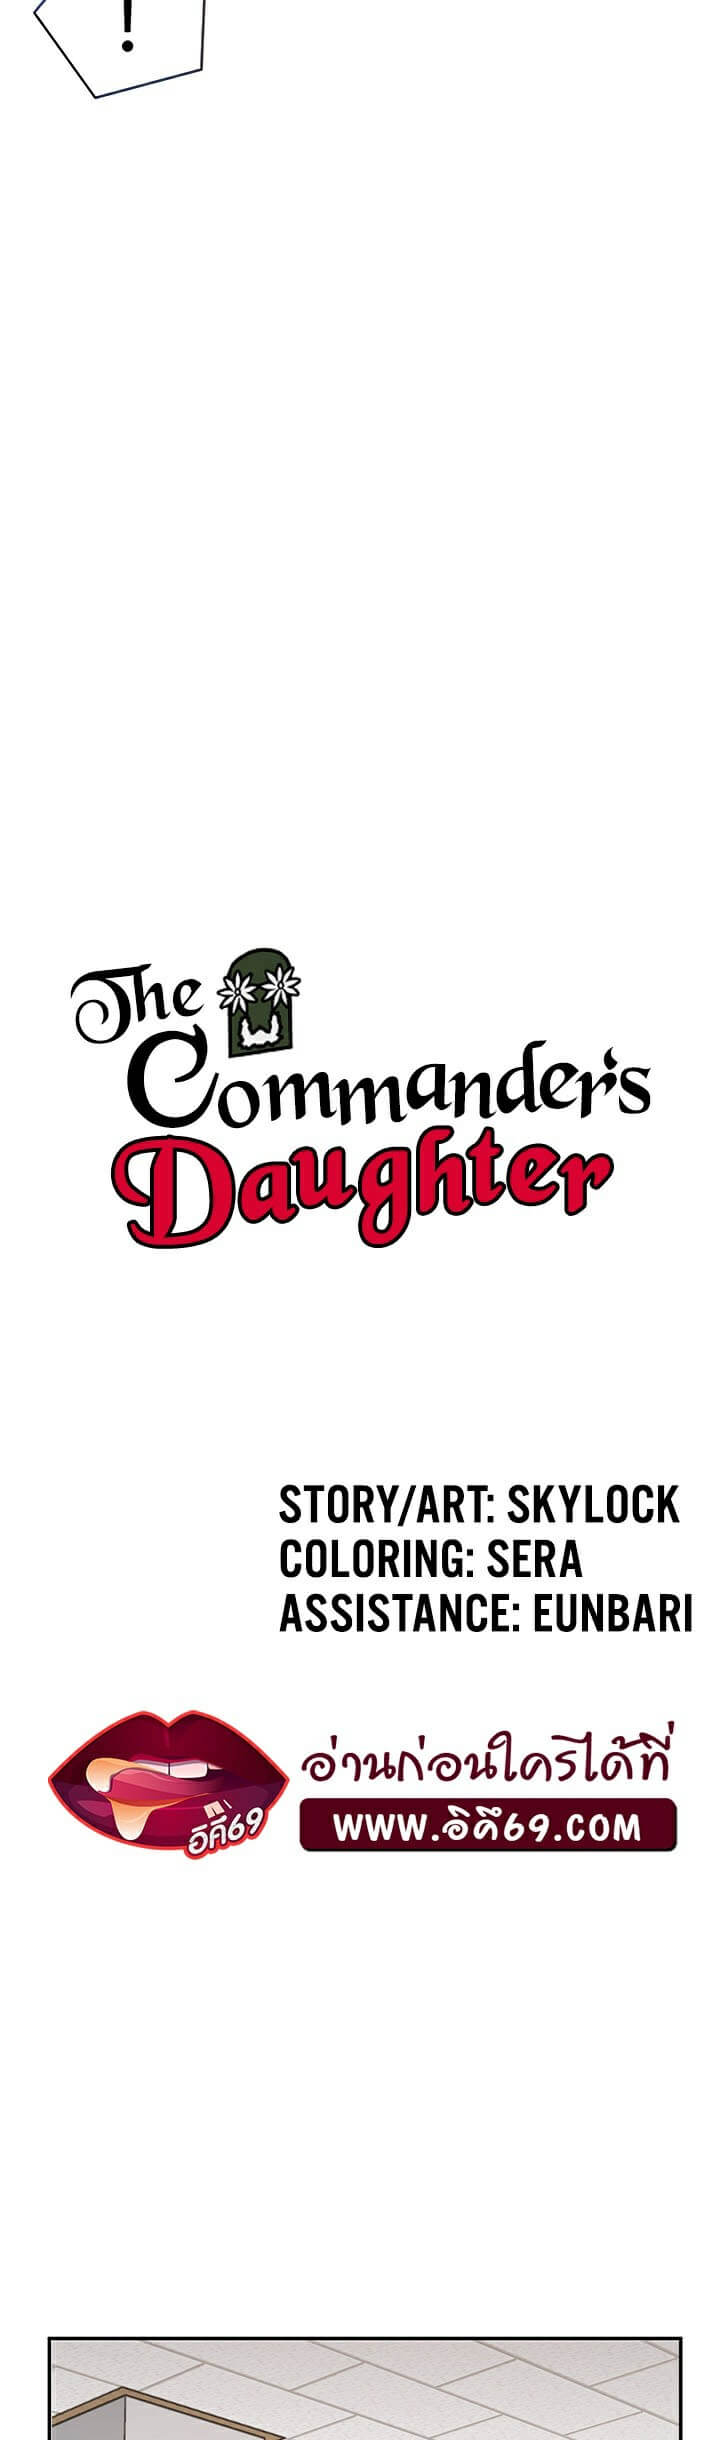 The Commander’s Daughter ตอนที่ 12 ภาพ 14